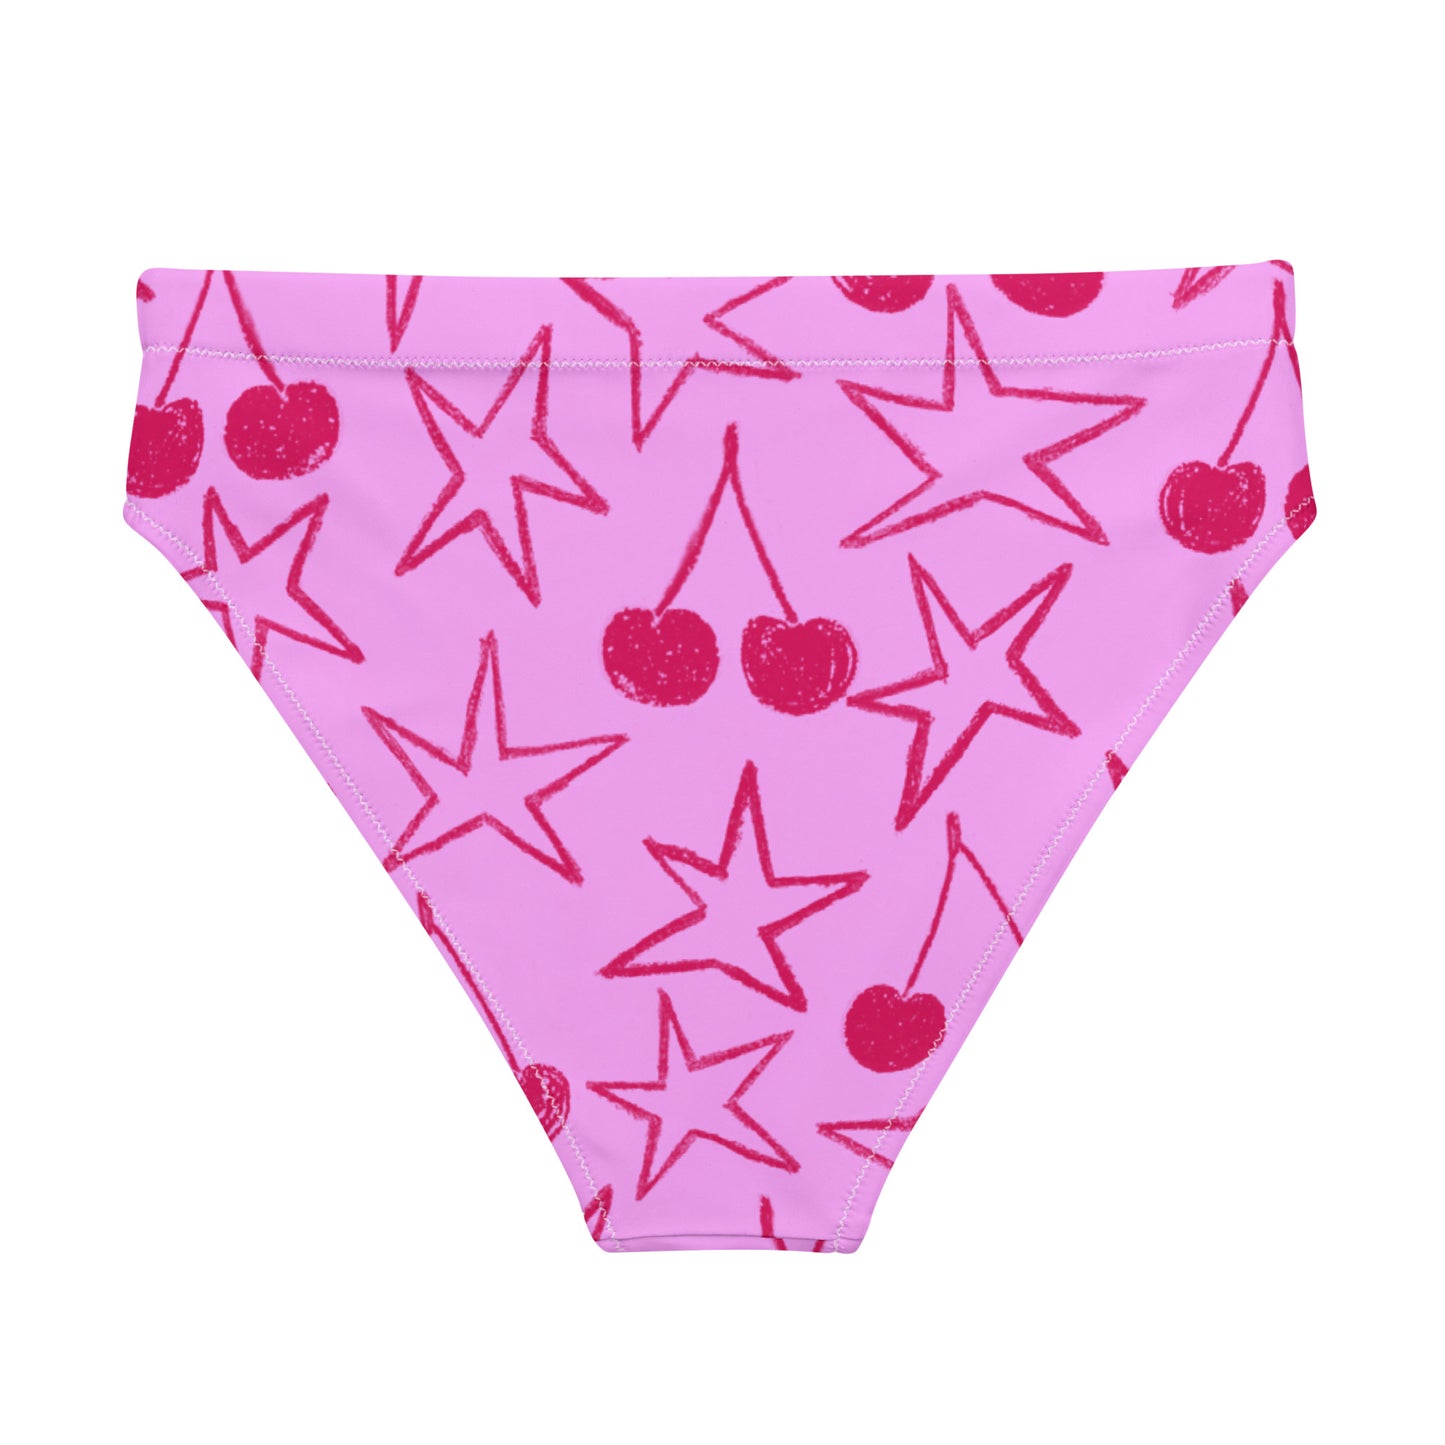 ♻️ Stars and Cherries Recycled bikini bottom